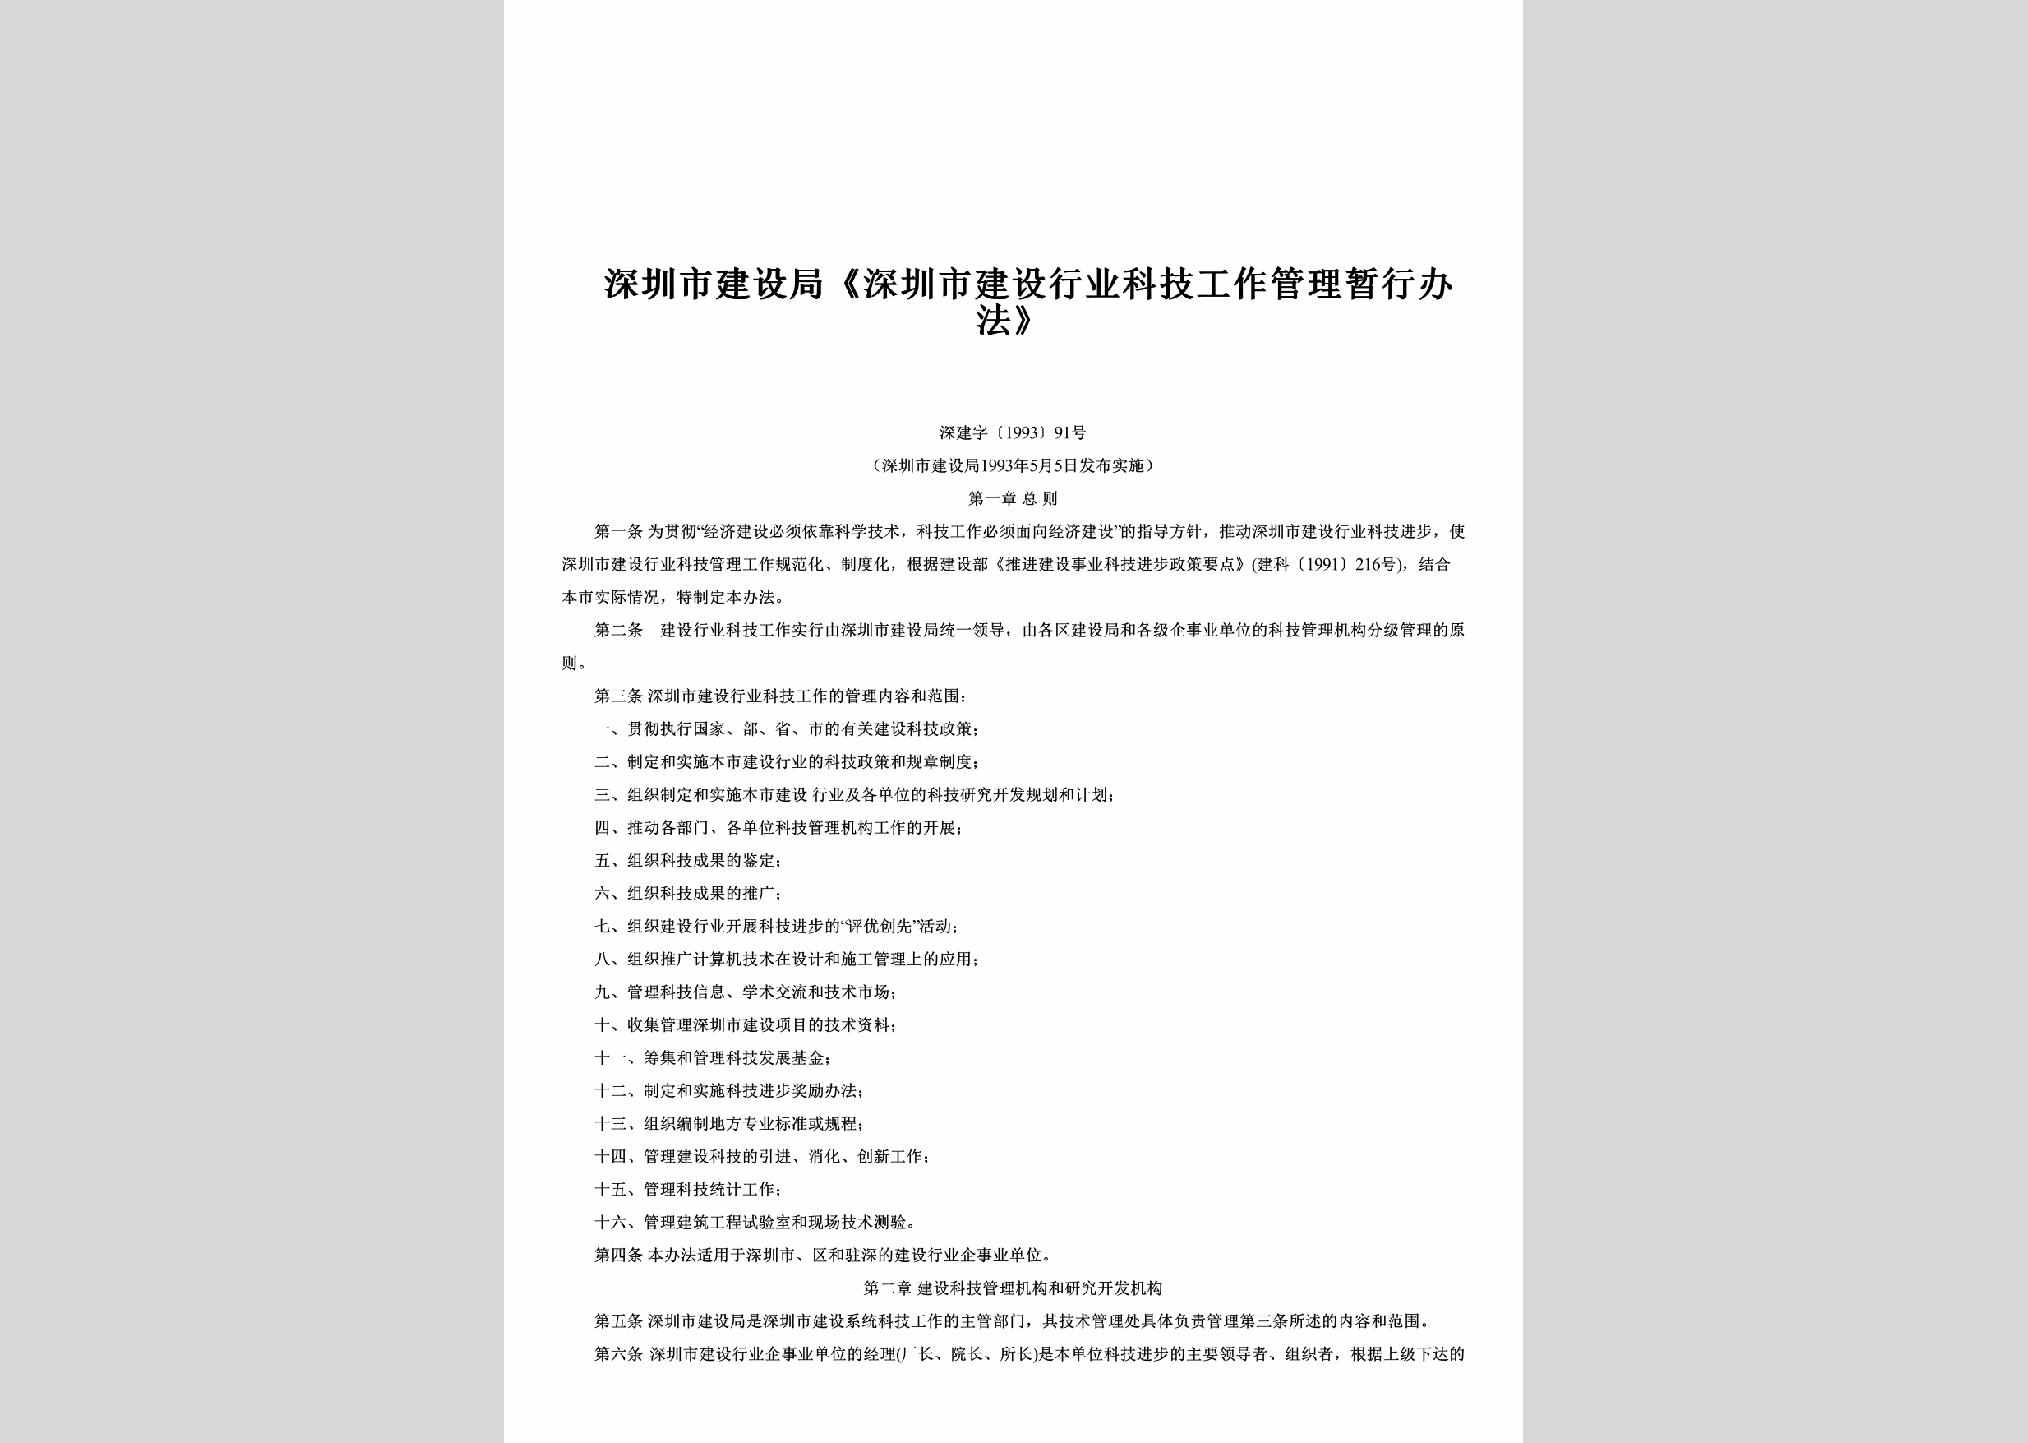 深建字[1993]91号：《深圳市建设行业科技工作管理暂行办法》